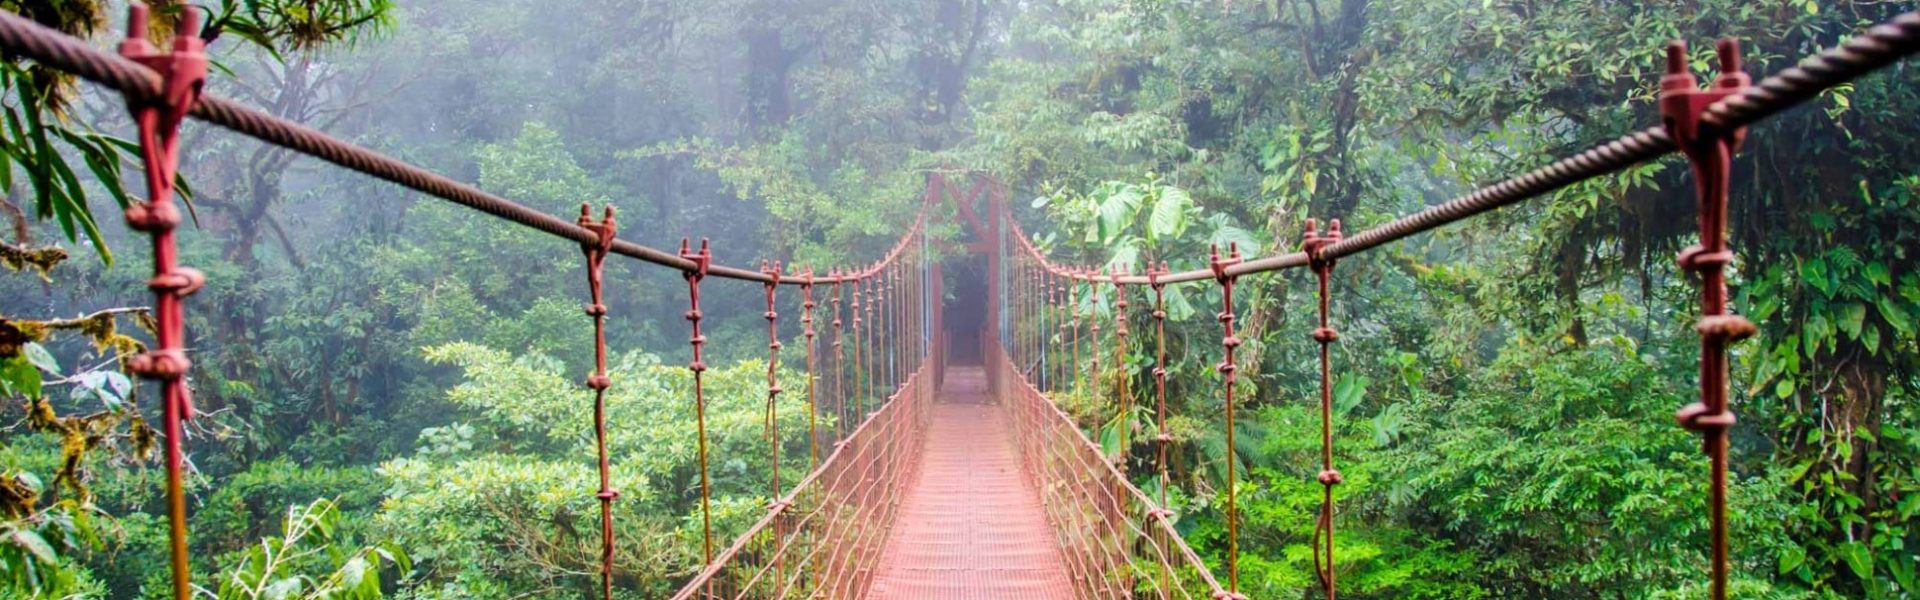 Puente en Costa Rica